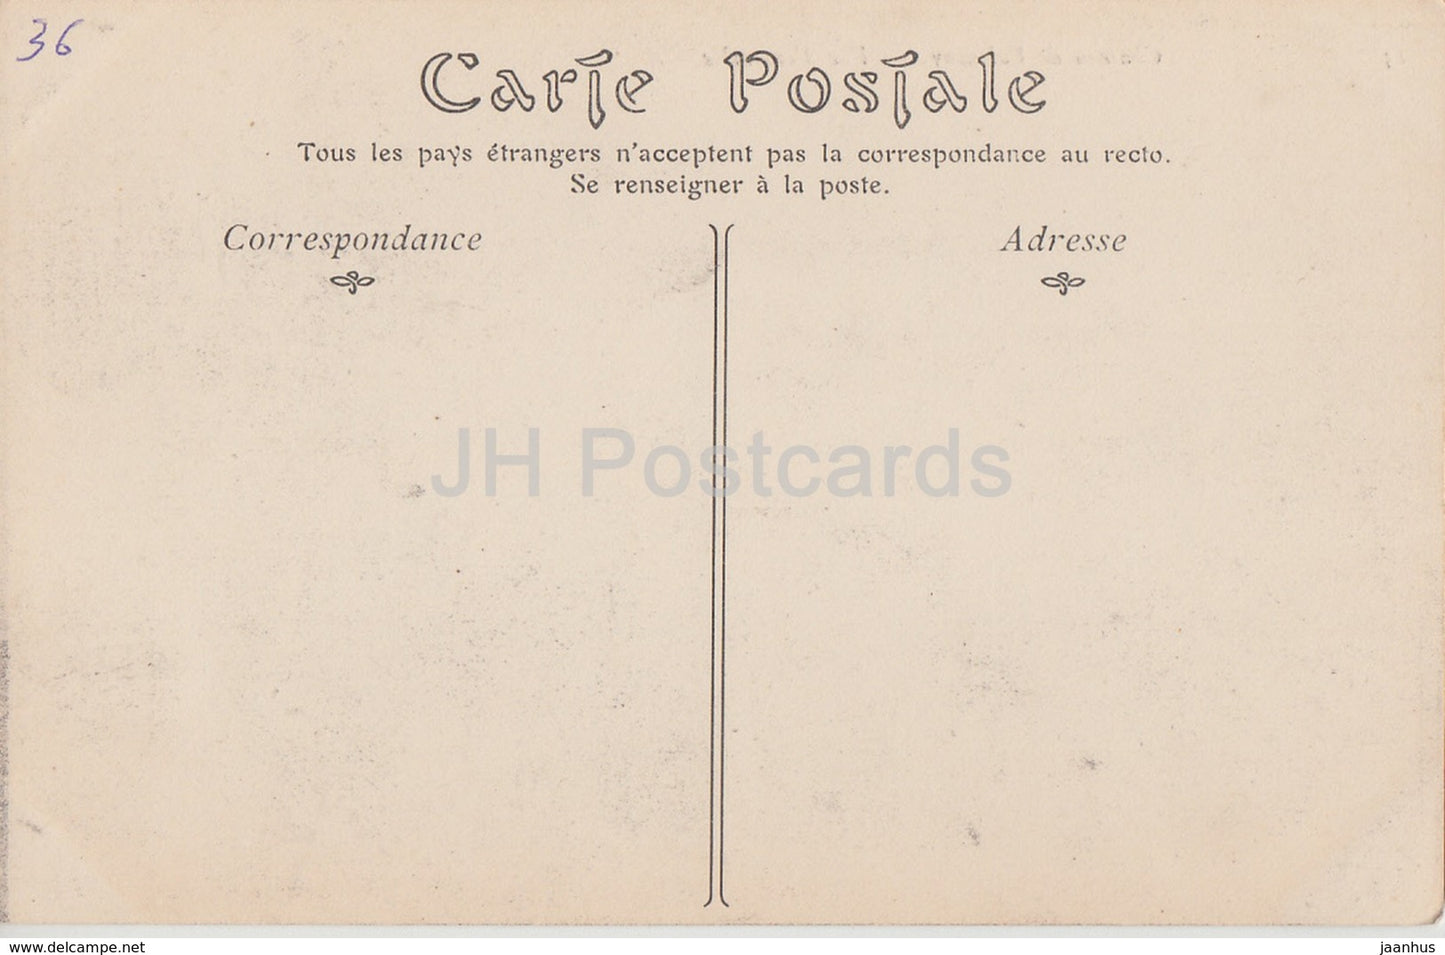 Chateau de Valencay - Vue d'ensemble - castle - 13 - old postcard - France - unused